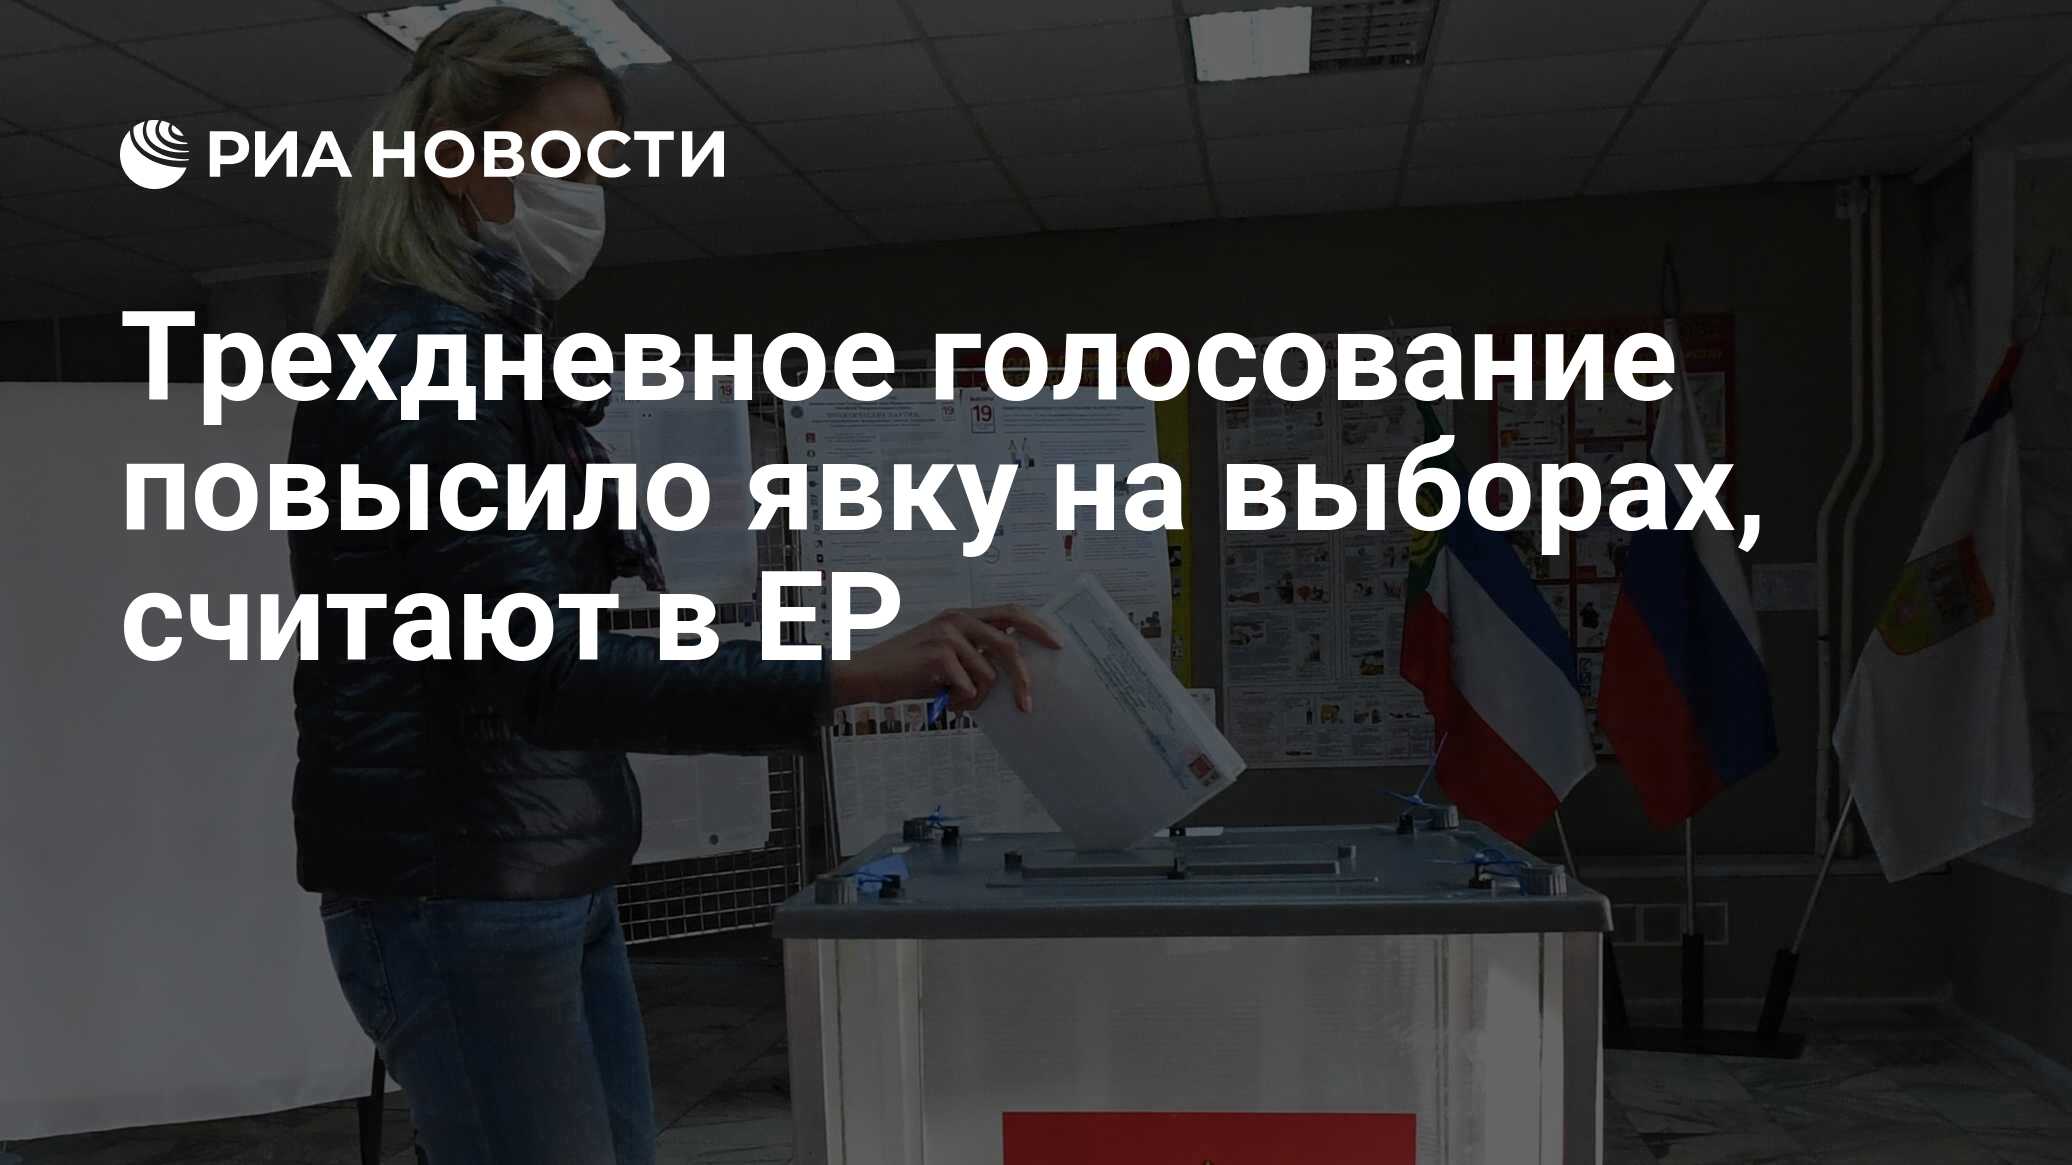 Явка на выборы президента в хабаровском крае. Как увеличить явку на выборы.